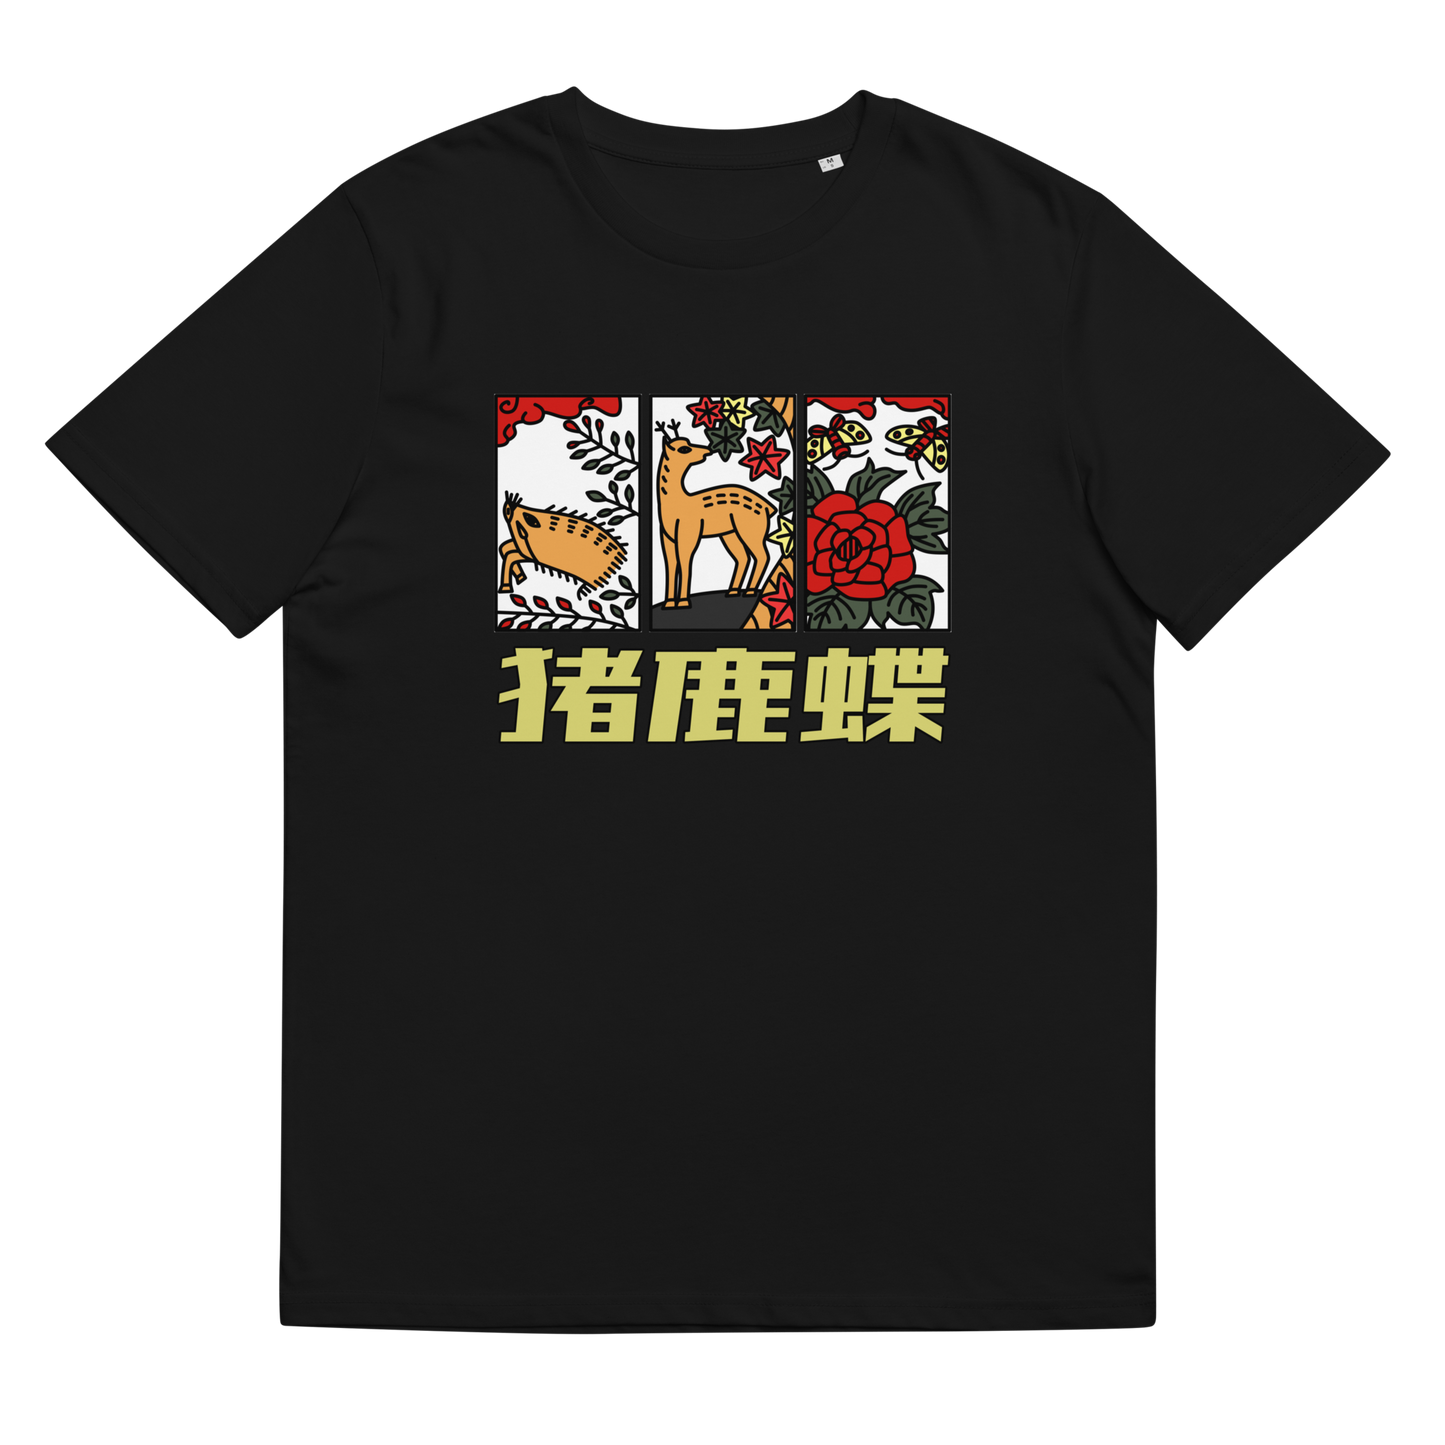 [Hanafuda] Camiseta Javali Moderno Borboleta (Unisex)